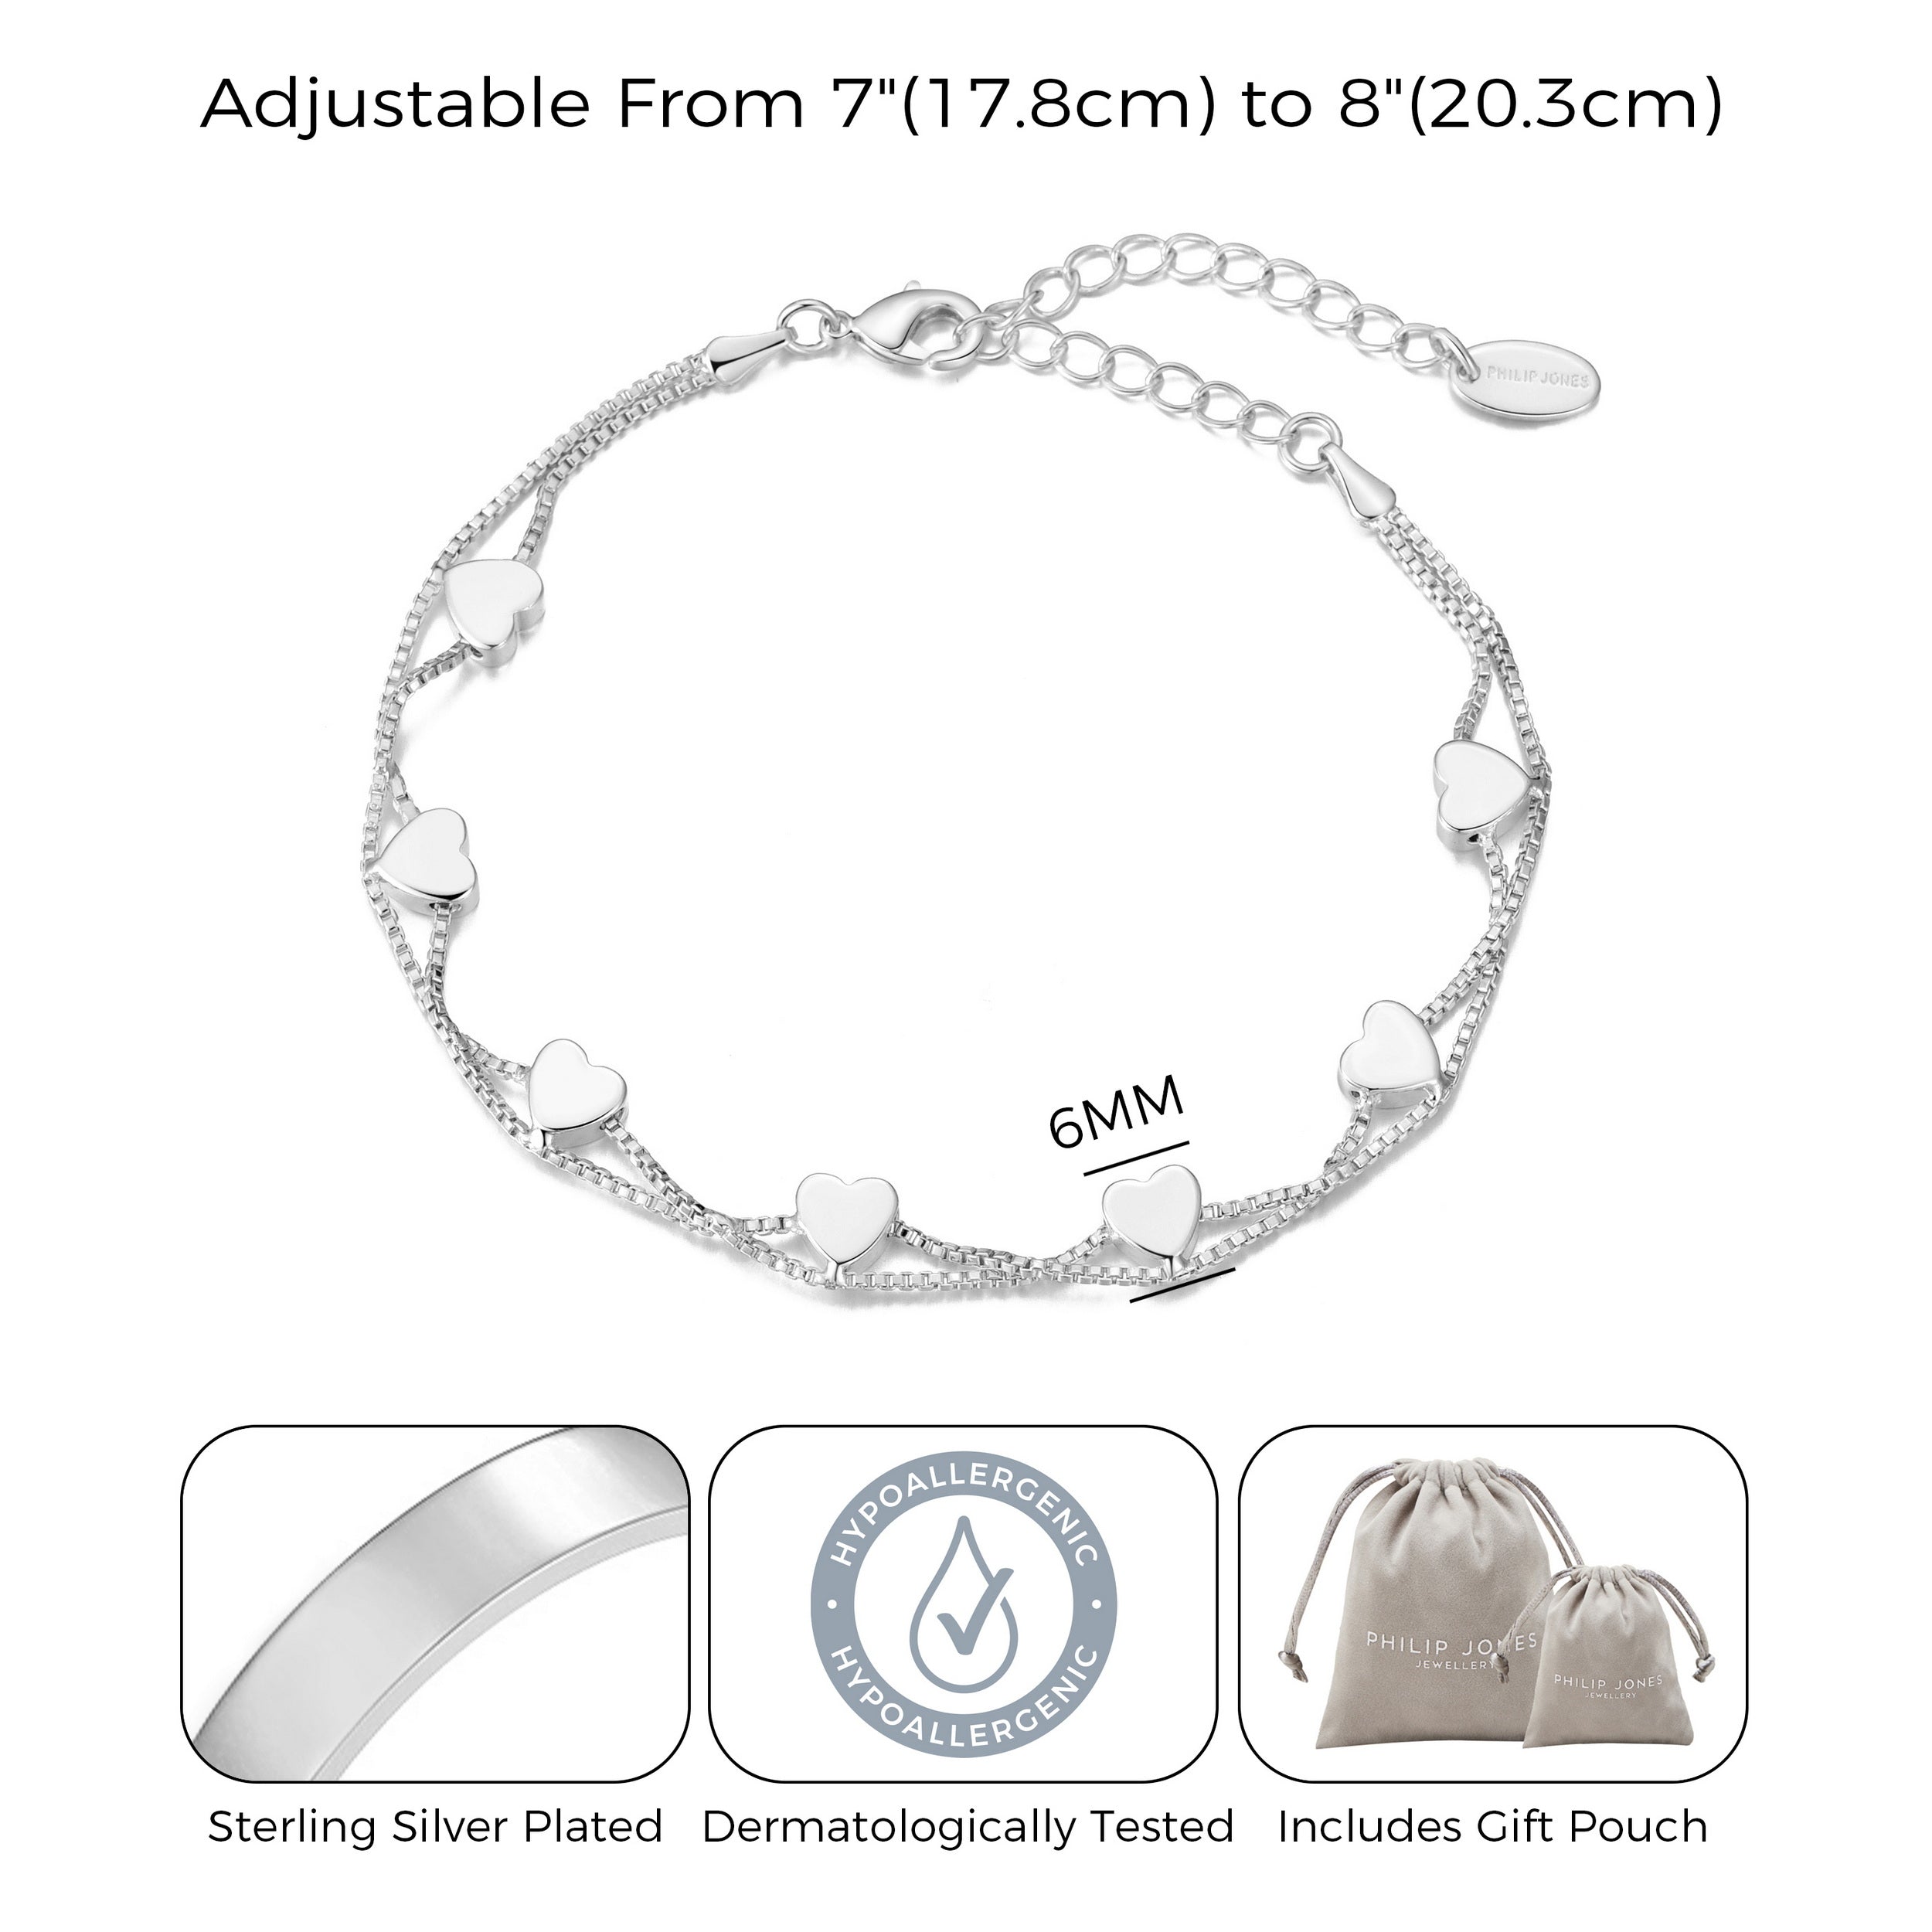 Silver Plated Heart Bracelet